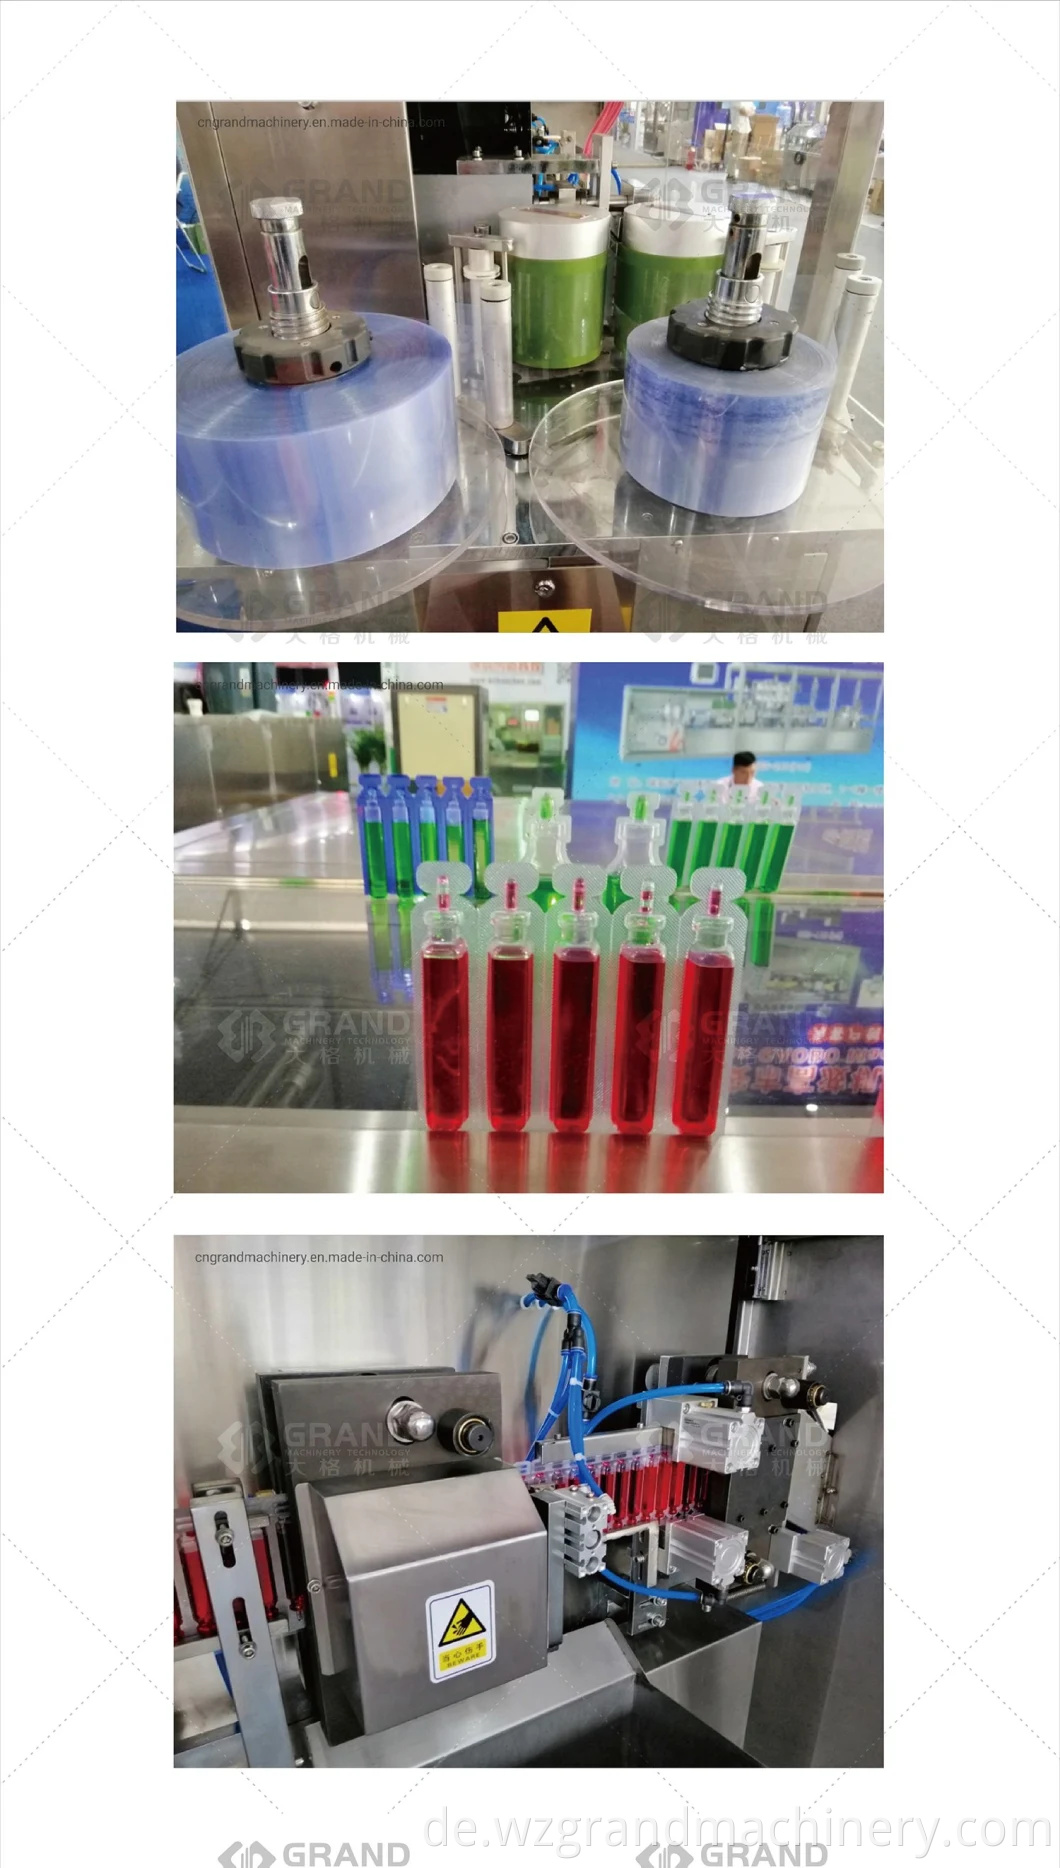 GGS-118 P5 AUTOMATISCHE PISTALISCHE PISTRASTID-LID-Kunststoff-Flaschen Ampulle bilden Füllungsdichtungsmaschine für landwirtschaftliche Chemikalie mit automatischem Kennzeichnungsmaschinen